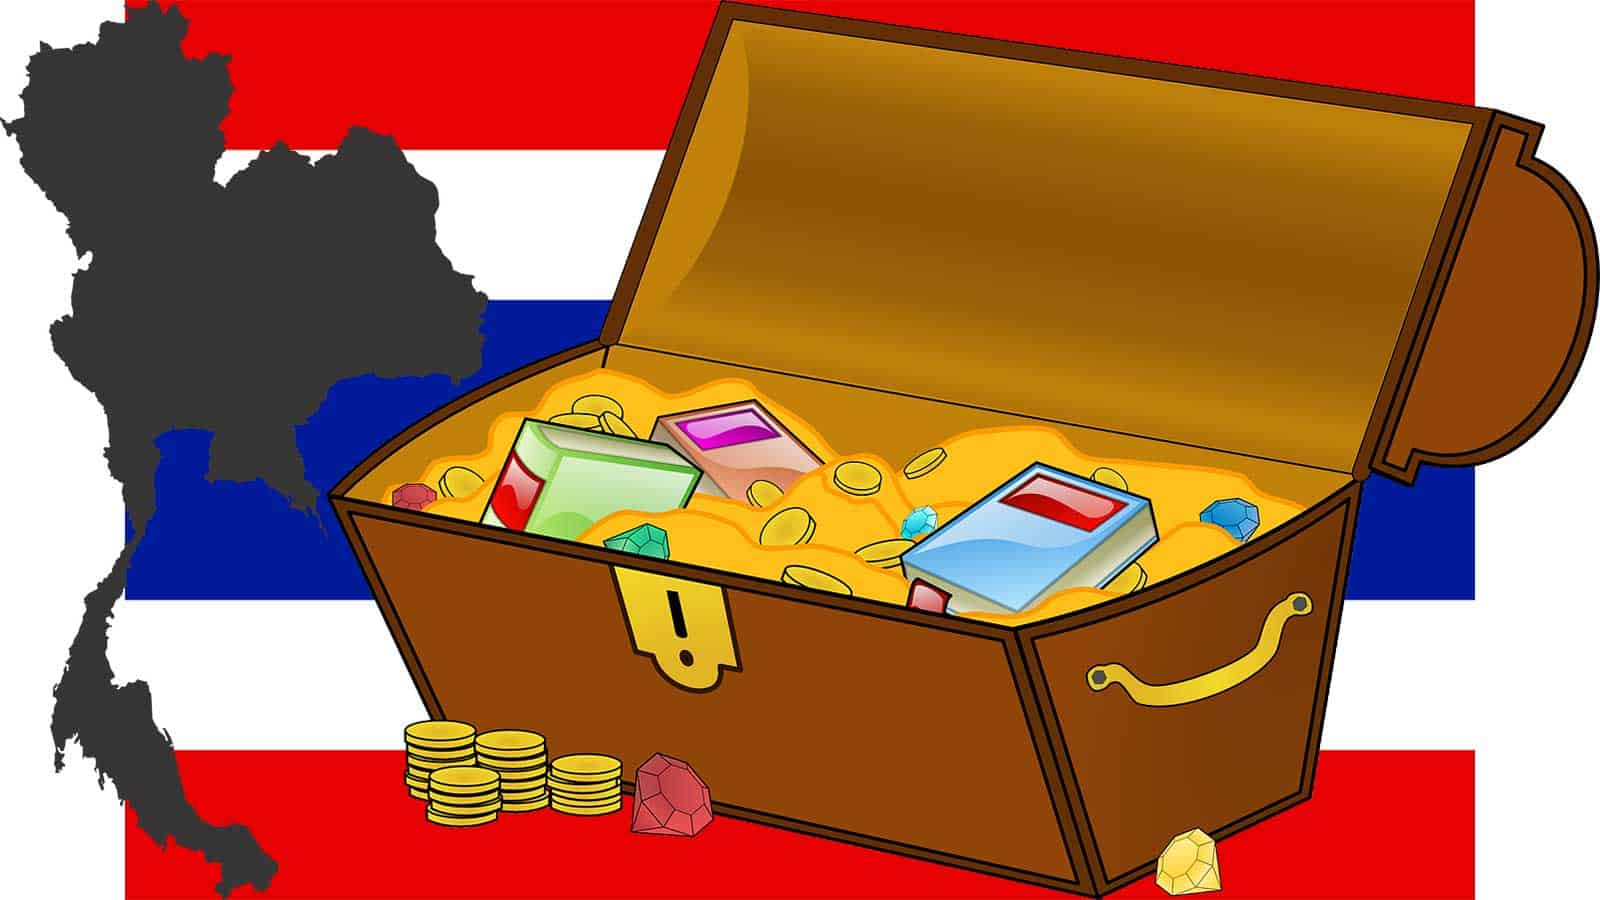 จังหวัดที่เป็นหนี้เป็นสินมากที่สุดในประเทศไทย ล่าสุด